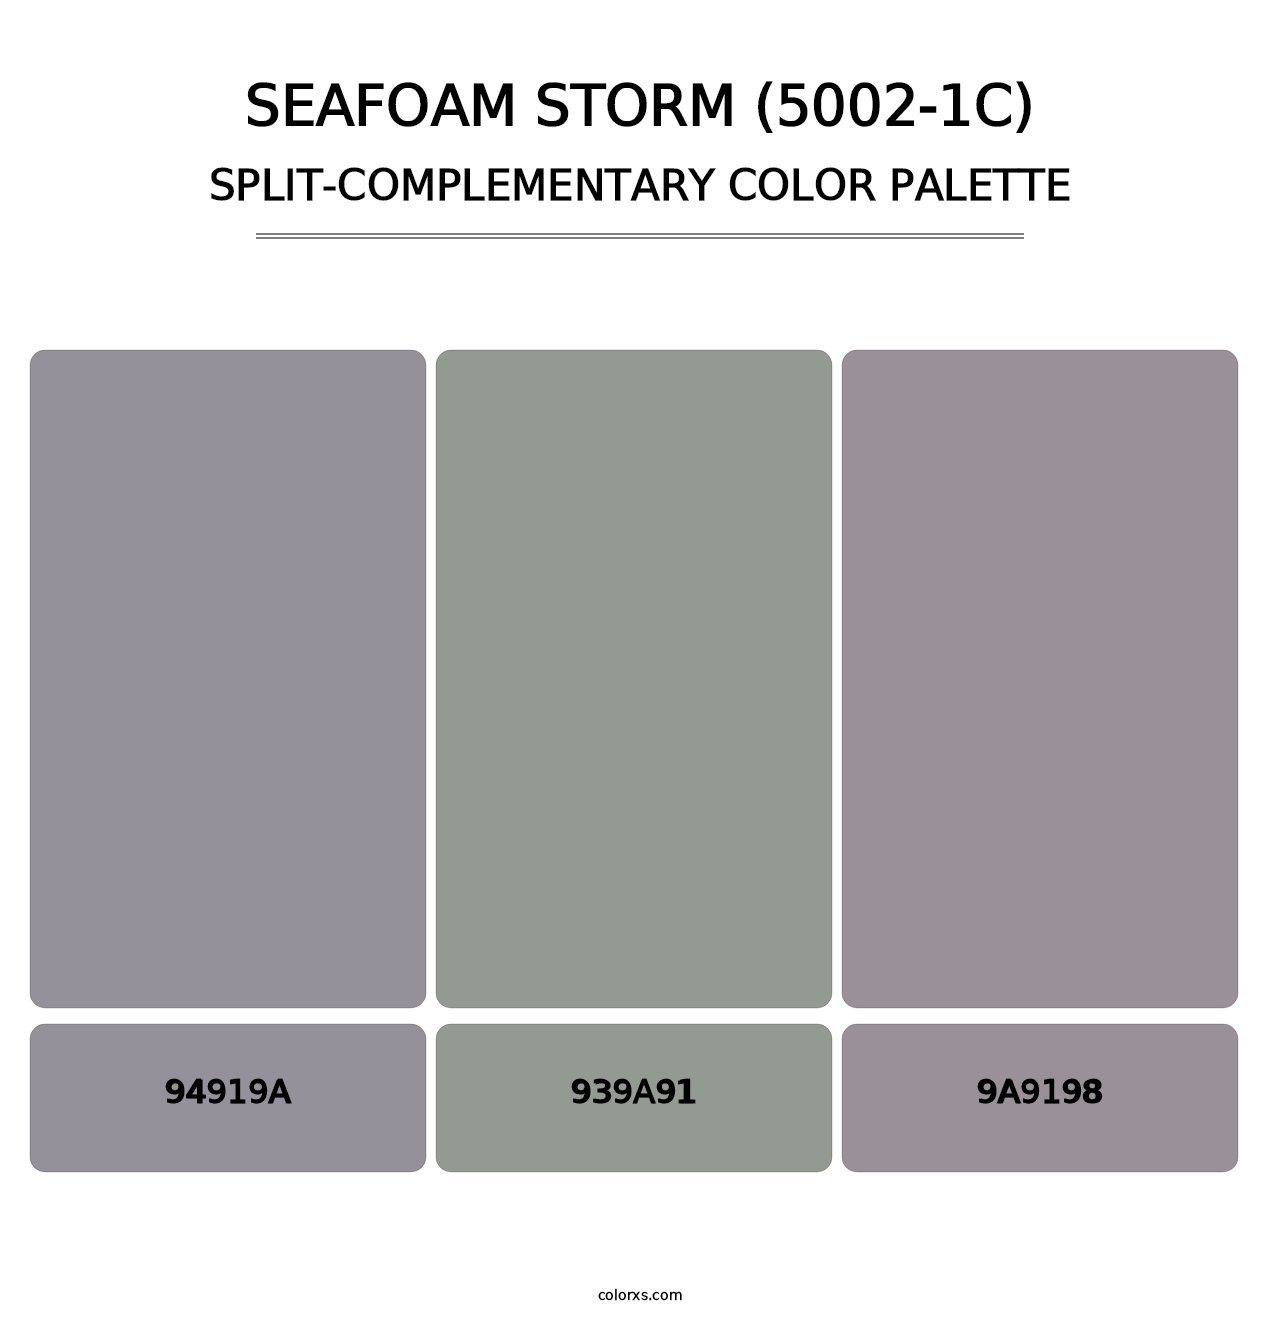 Seafoam Storm (5002-1C) - Split-Complementary Color Palette